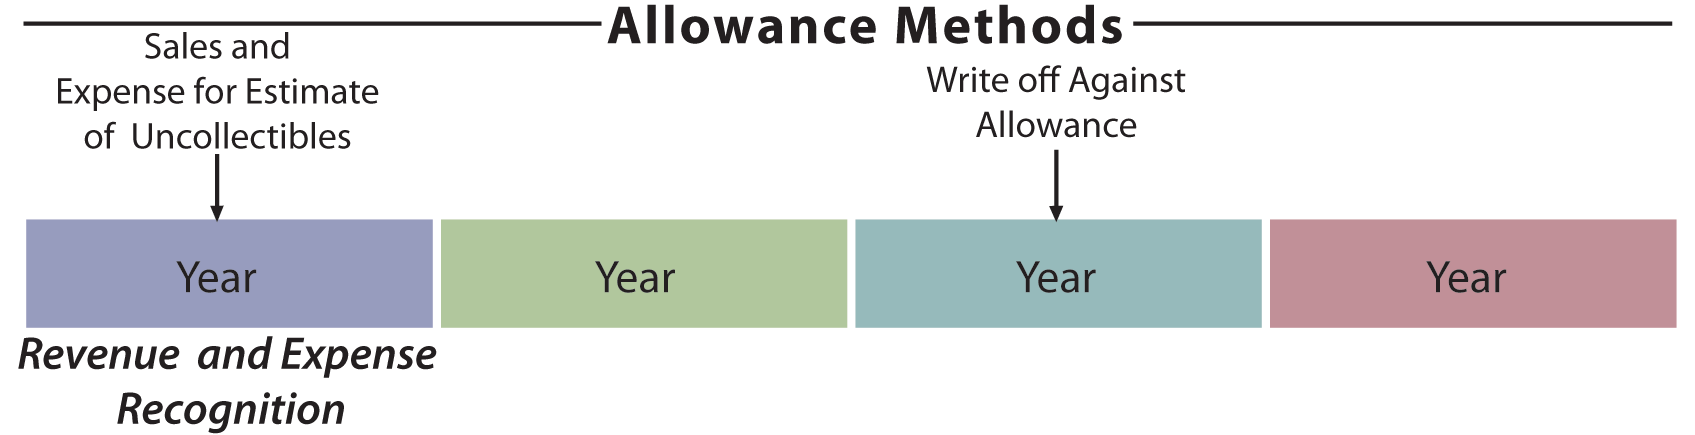 Allowance Method illustration